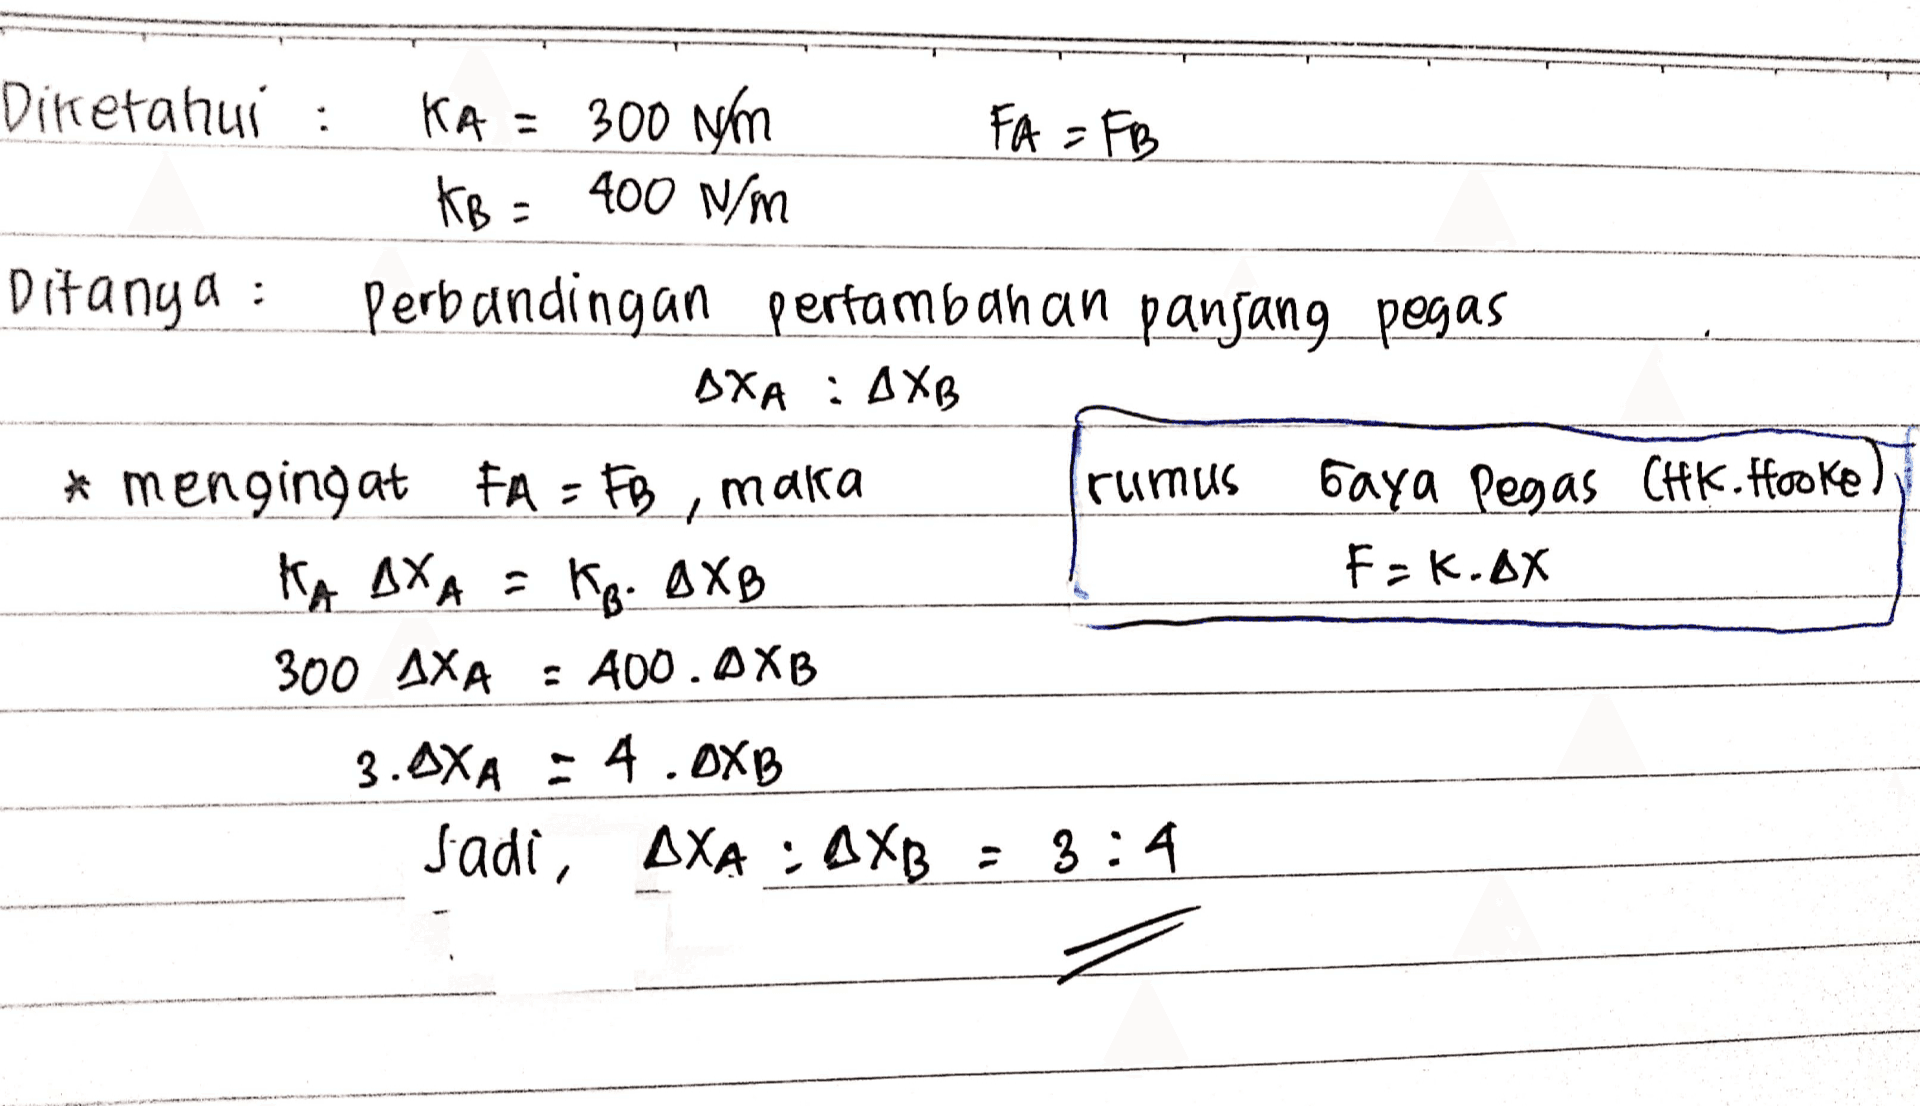 Diketahui : KA = 300 Nm FA = FB KB = 400 N/m Ditanya : Perbandingan pertambahan panjang pegas AXA : AXB * * mengingat FA = FB, maka ruimus Gaya Pegas CHK. Hooke) KA AXA = F=k.ax 300 AXA : A00. AXB 3. AXA : 4.0XB Jadi, AXA : DXB = 3:4 KB. AXB 